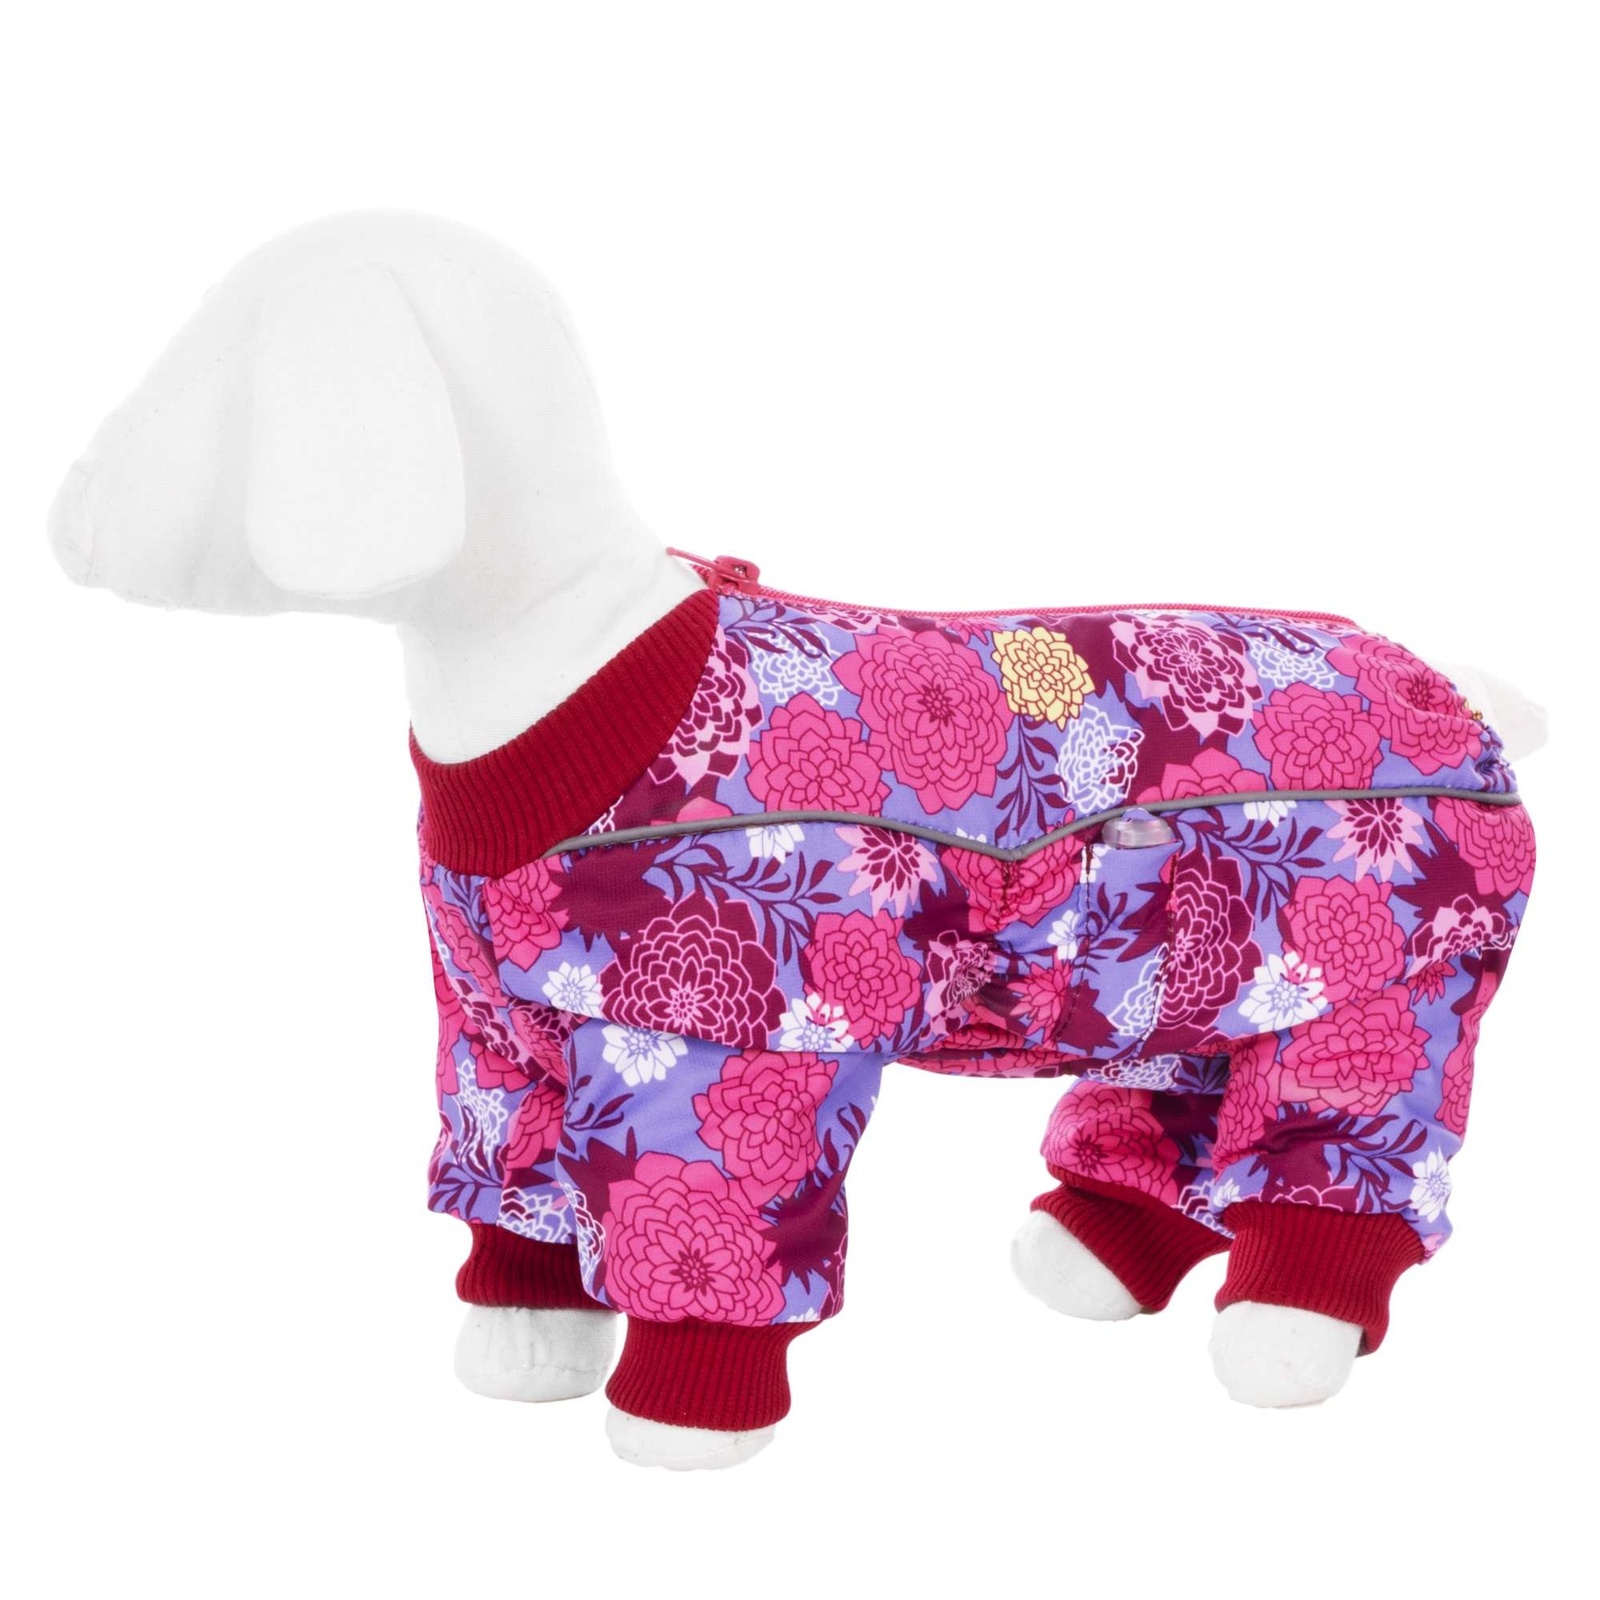 Yami-Yami одежда Yami-Yami одежда комбинезон для собак малых пород, на флисе с рисунком цветы (100 г) yami yami одежда yami yami одежда комбинезон для собак малых пород на флисе с рисунком краски m